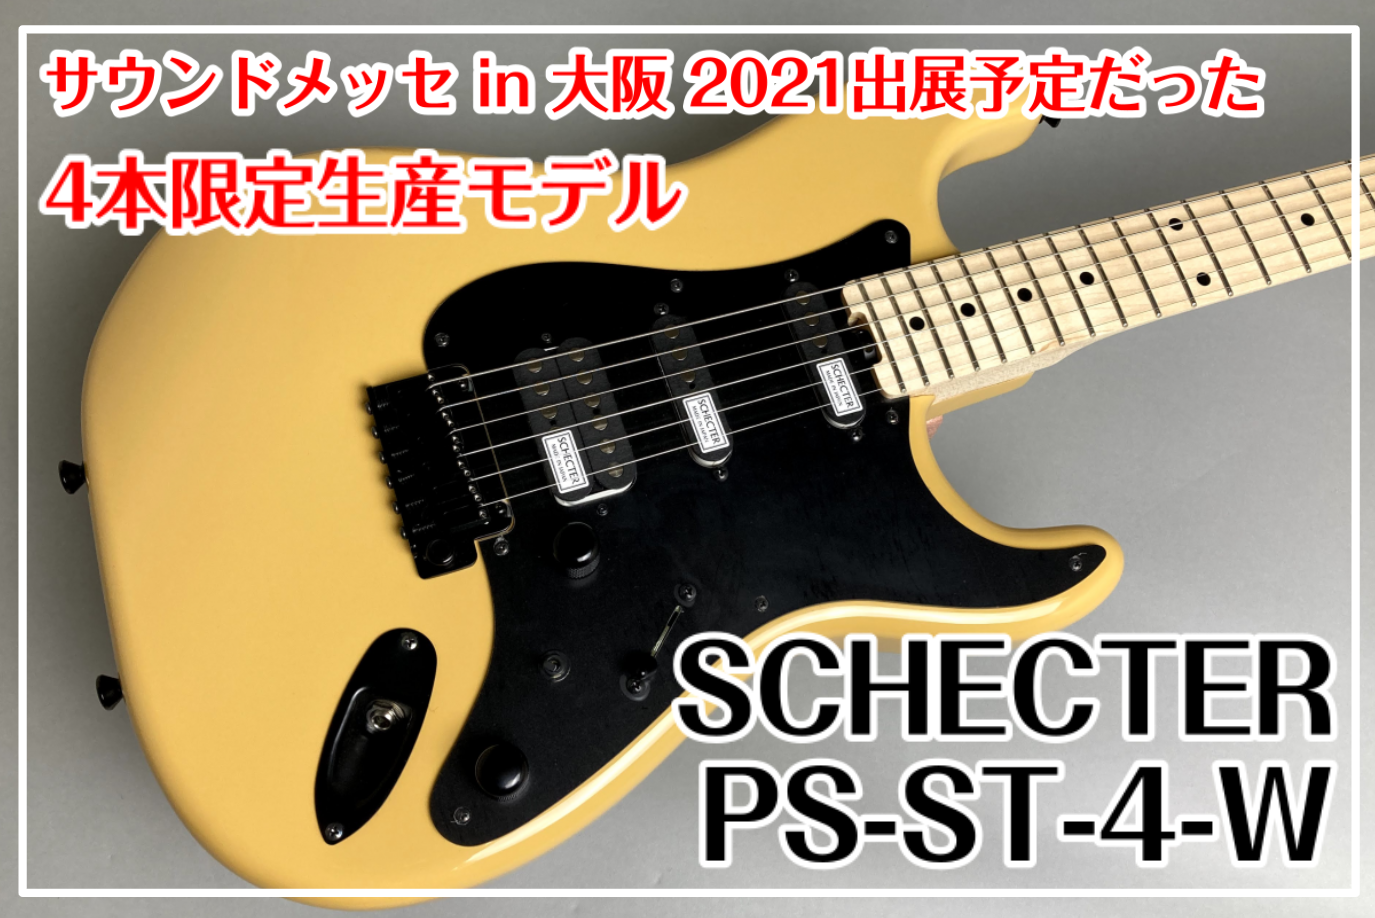 【サウンドメッセ2021】SCHECTER PS-ST-4-W MIMOSA サウンドメッセin大阪2021出展用モデル